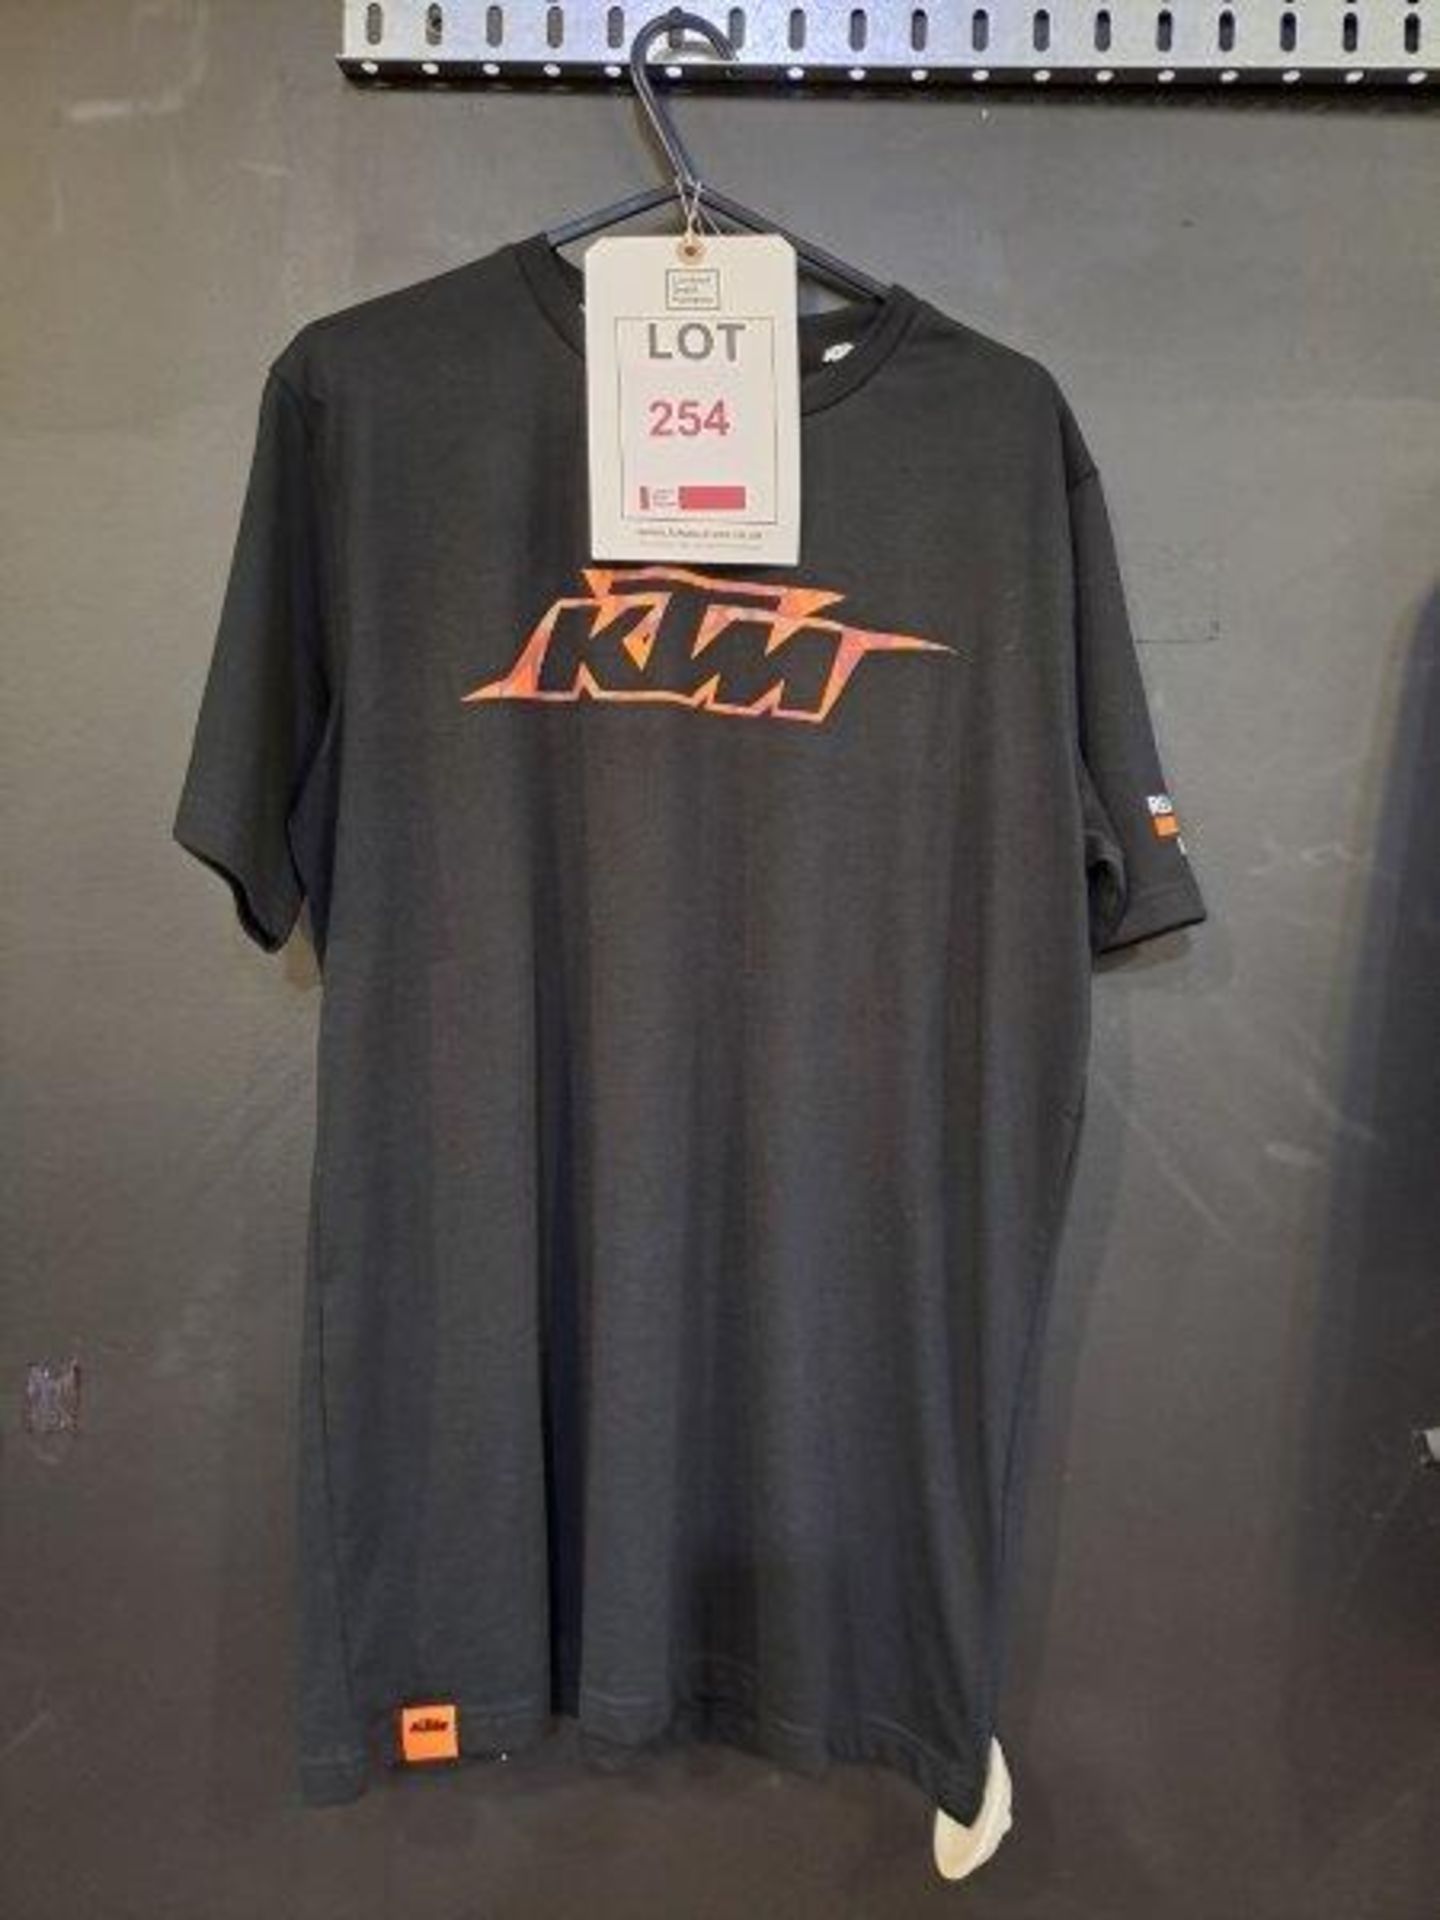 KTM Fashion Clothing - Image 2 of 11